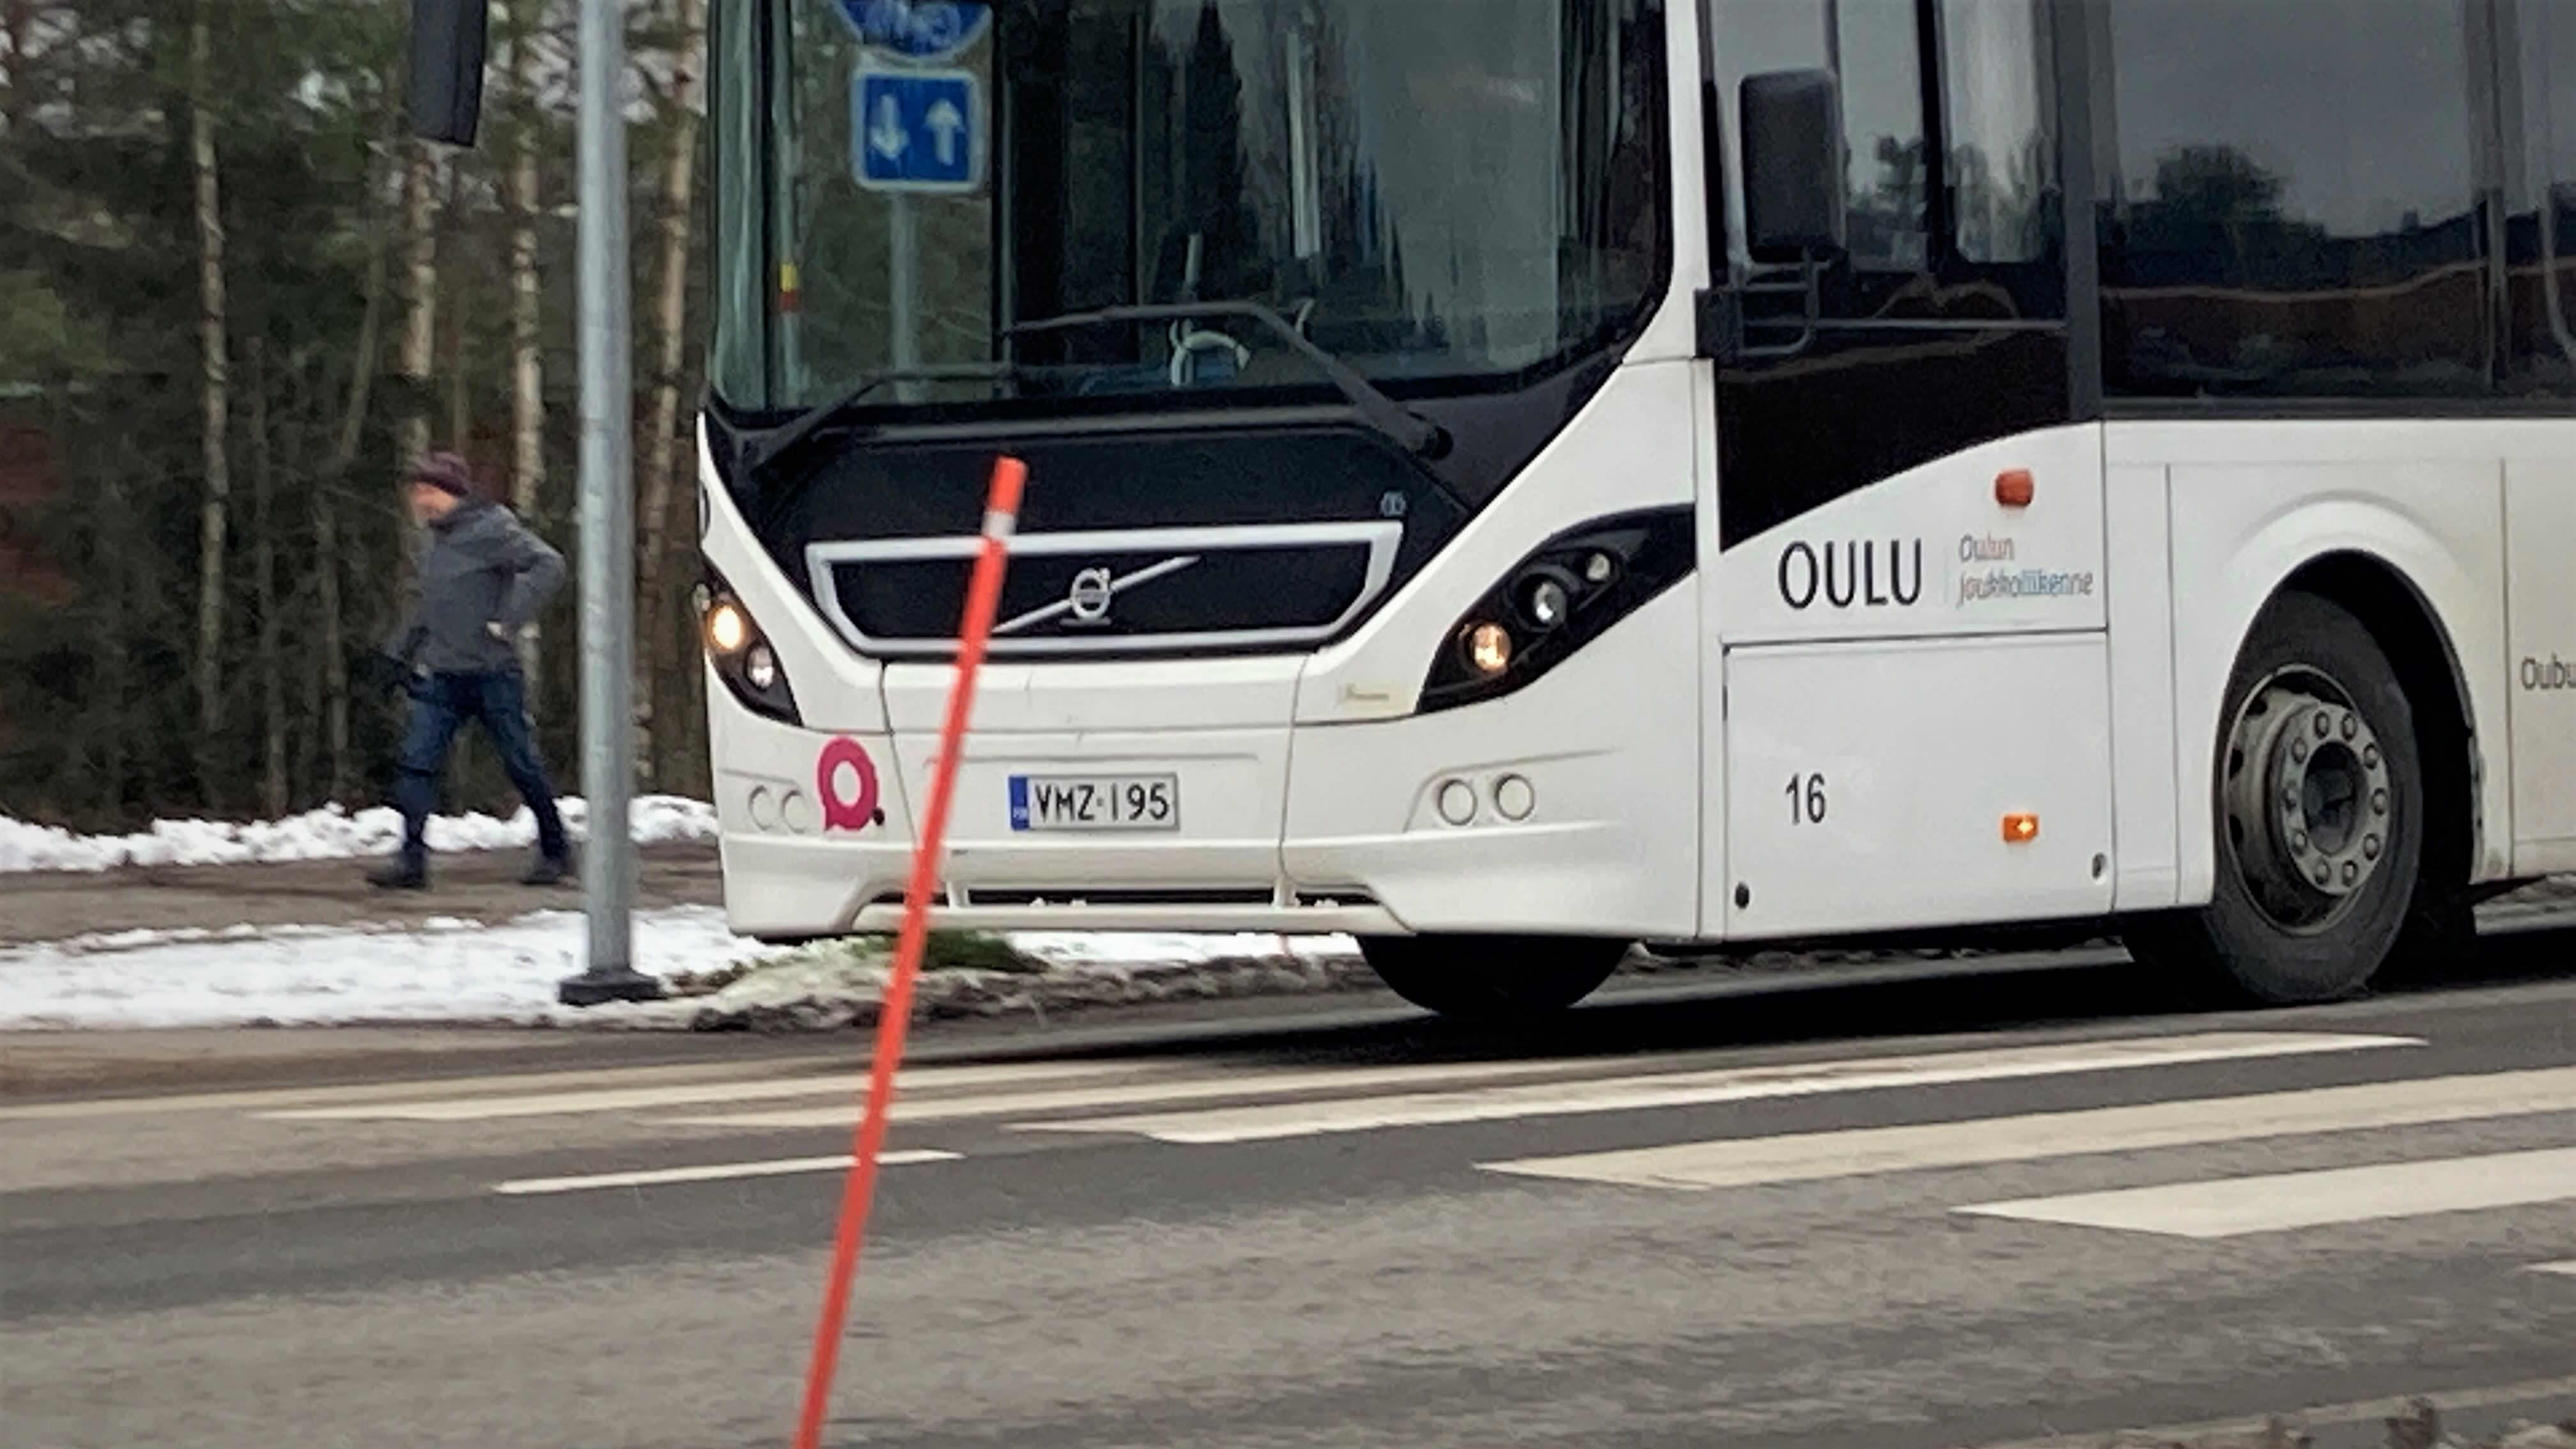 Oulun joukkoliikenteen valkoinen bussi ajaa tiellä. Taustalla jalankulkija kävelee jalkakäytävällä.